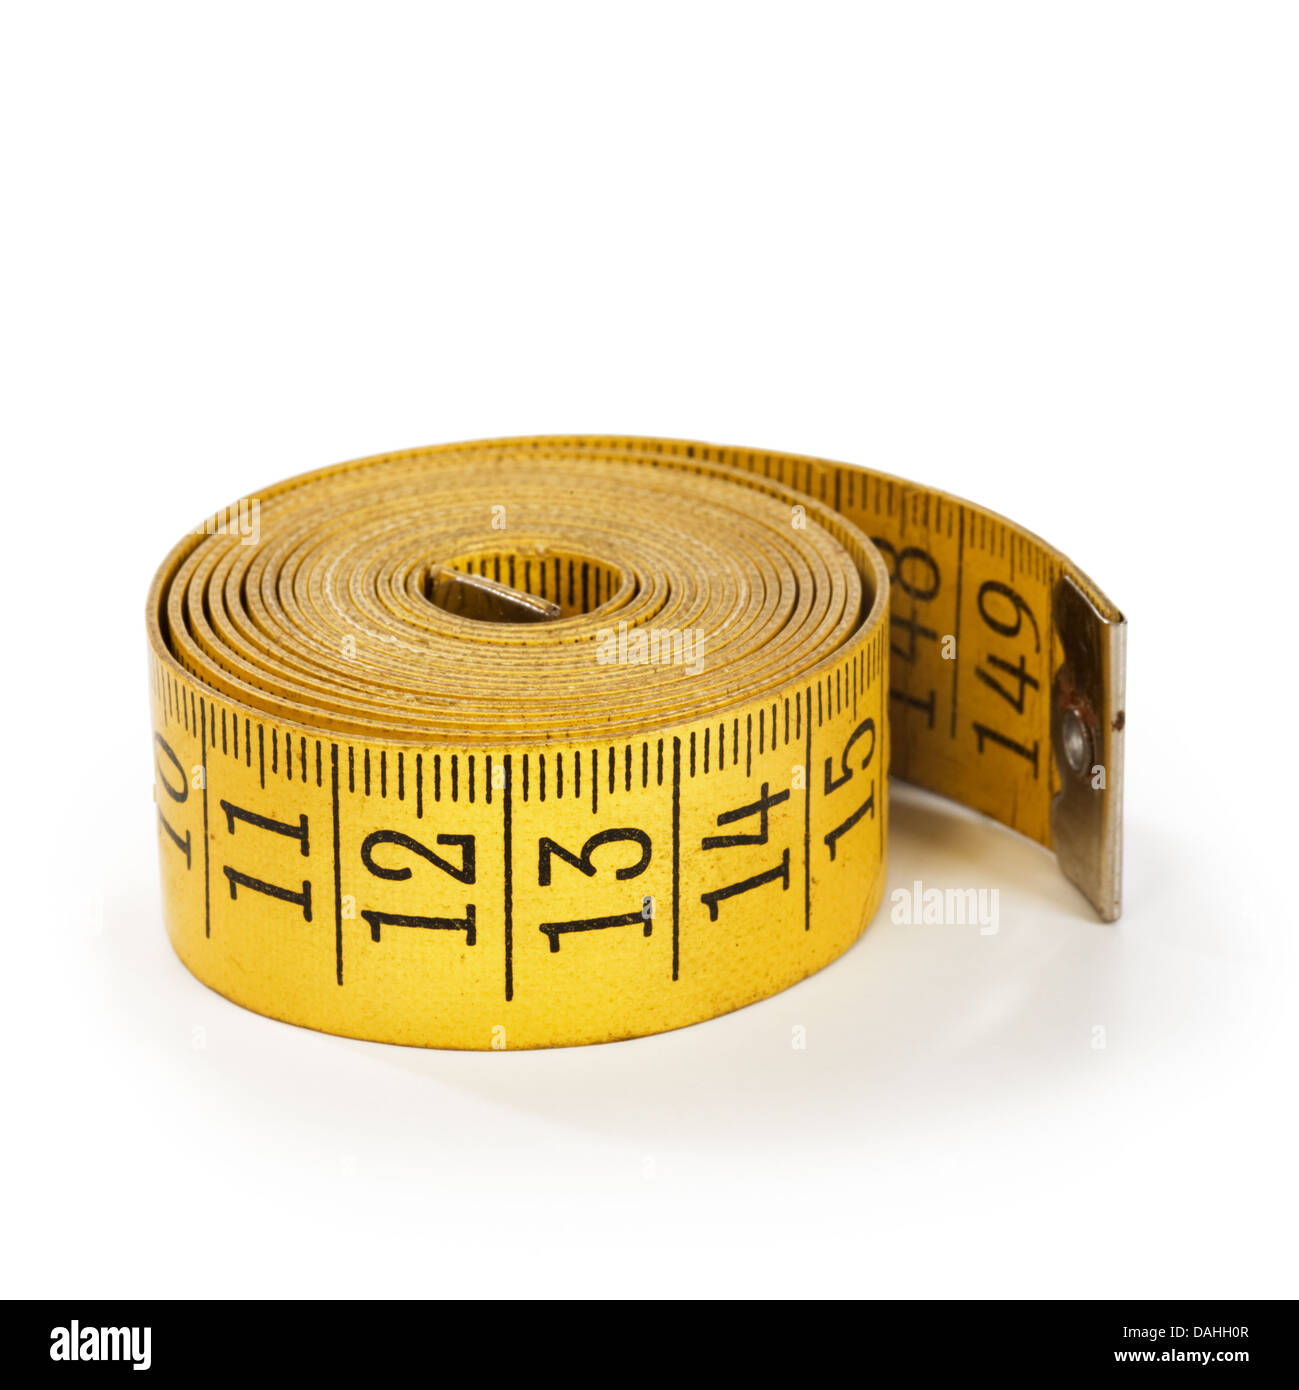 Retractable tape measure, tape measure, pro tek tape measure